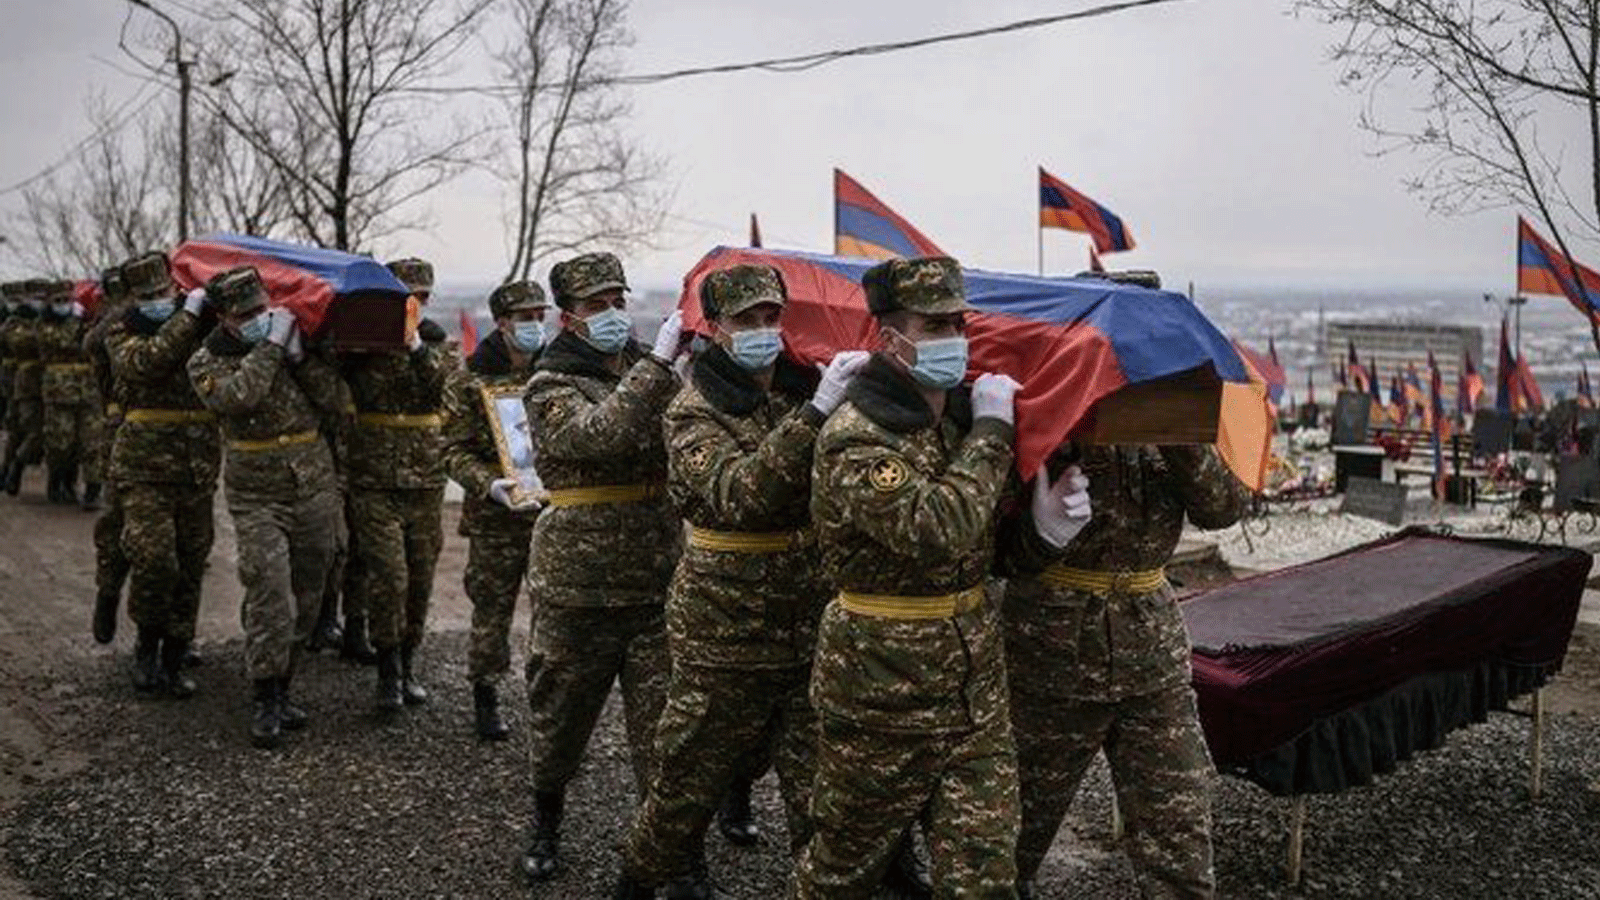 جنود يحملون نعوشاً لمقاتلين قضوا خلال الحرب في ناغورنو كاراباخ إلى مقبرة عسكرية في يريفان في 2 آذار/ مارس 2021 